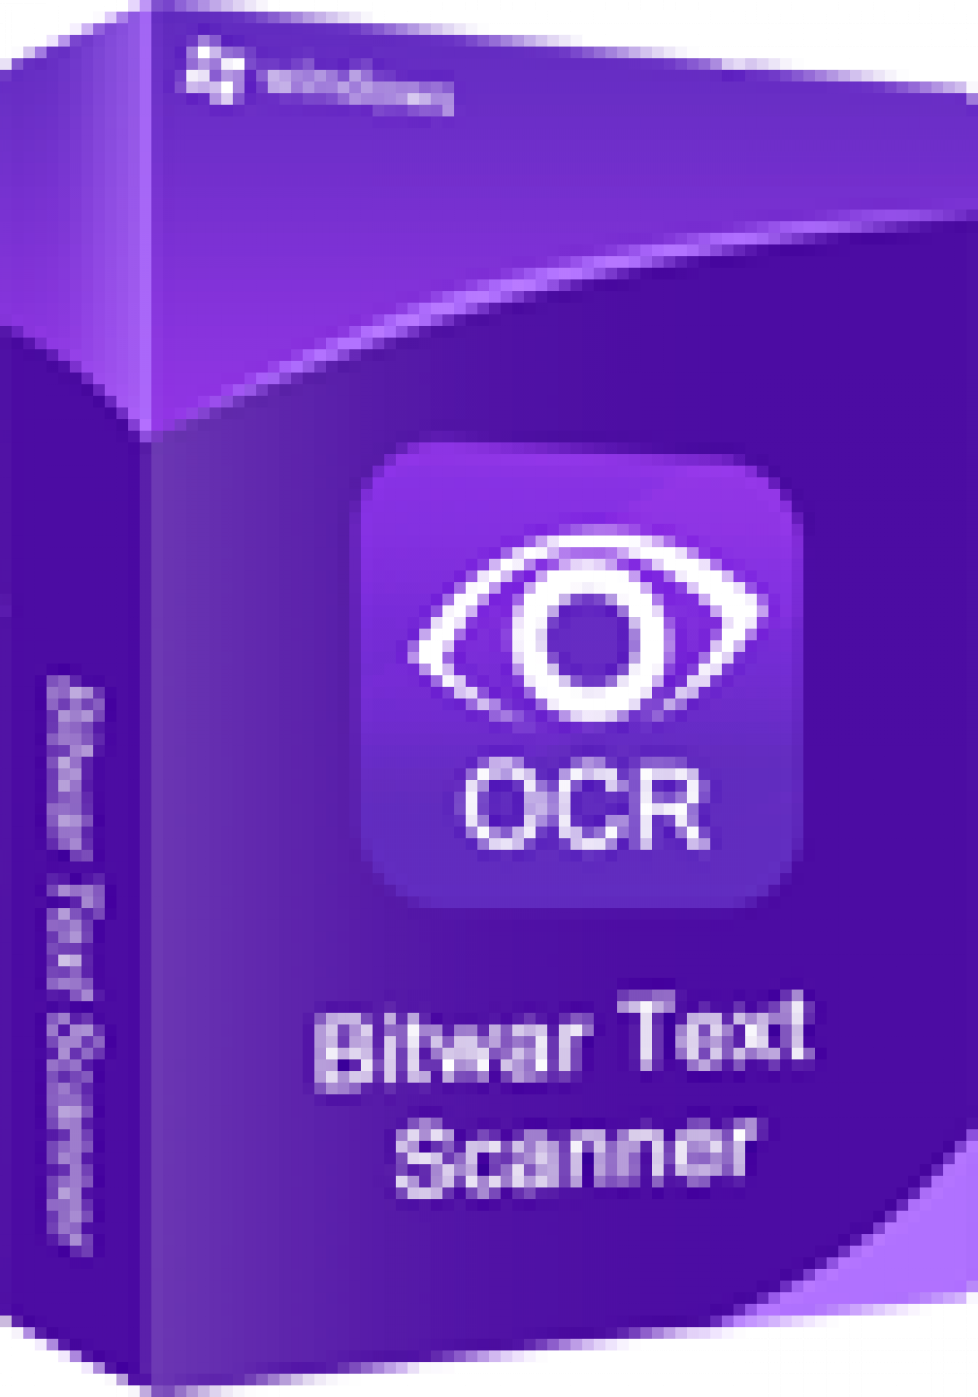 ocr scanner software excel